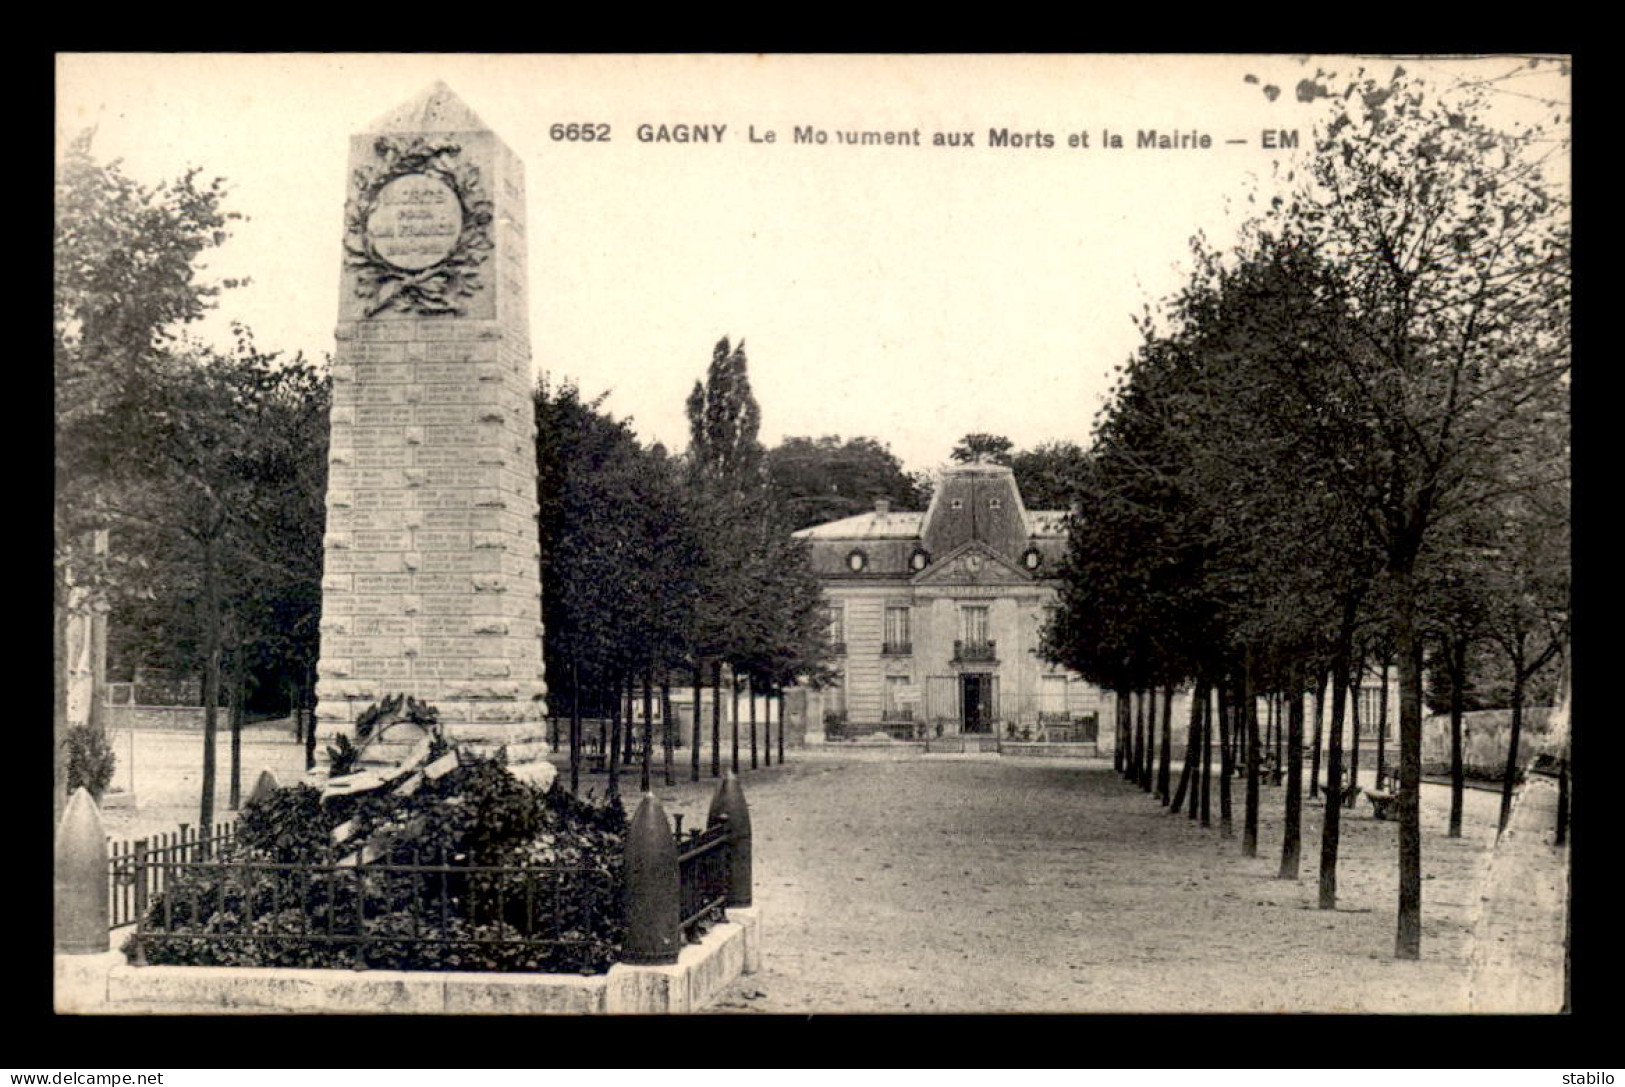 93 - GAGNY - LE MONUMENT AUX MORTS ET LA MAIRIE - Gagny